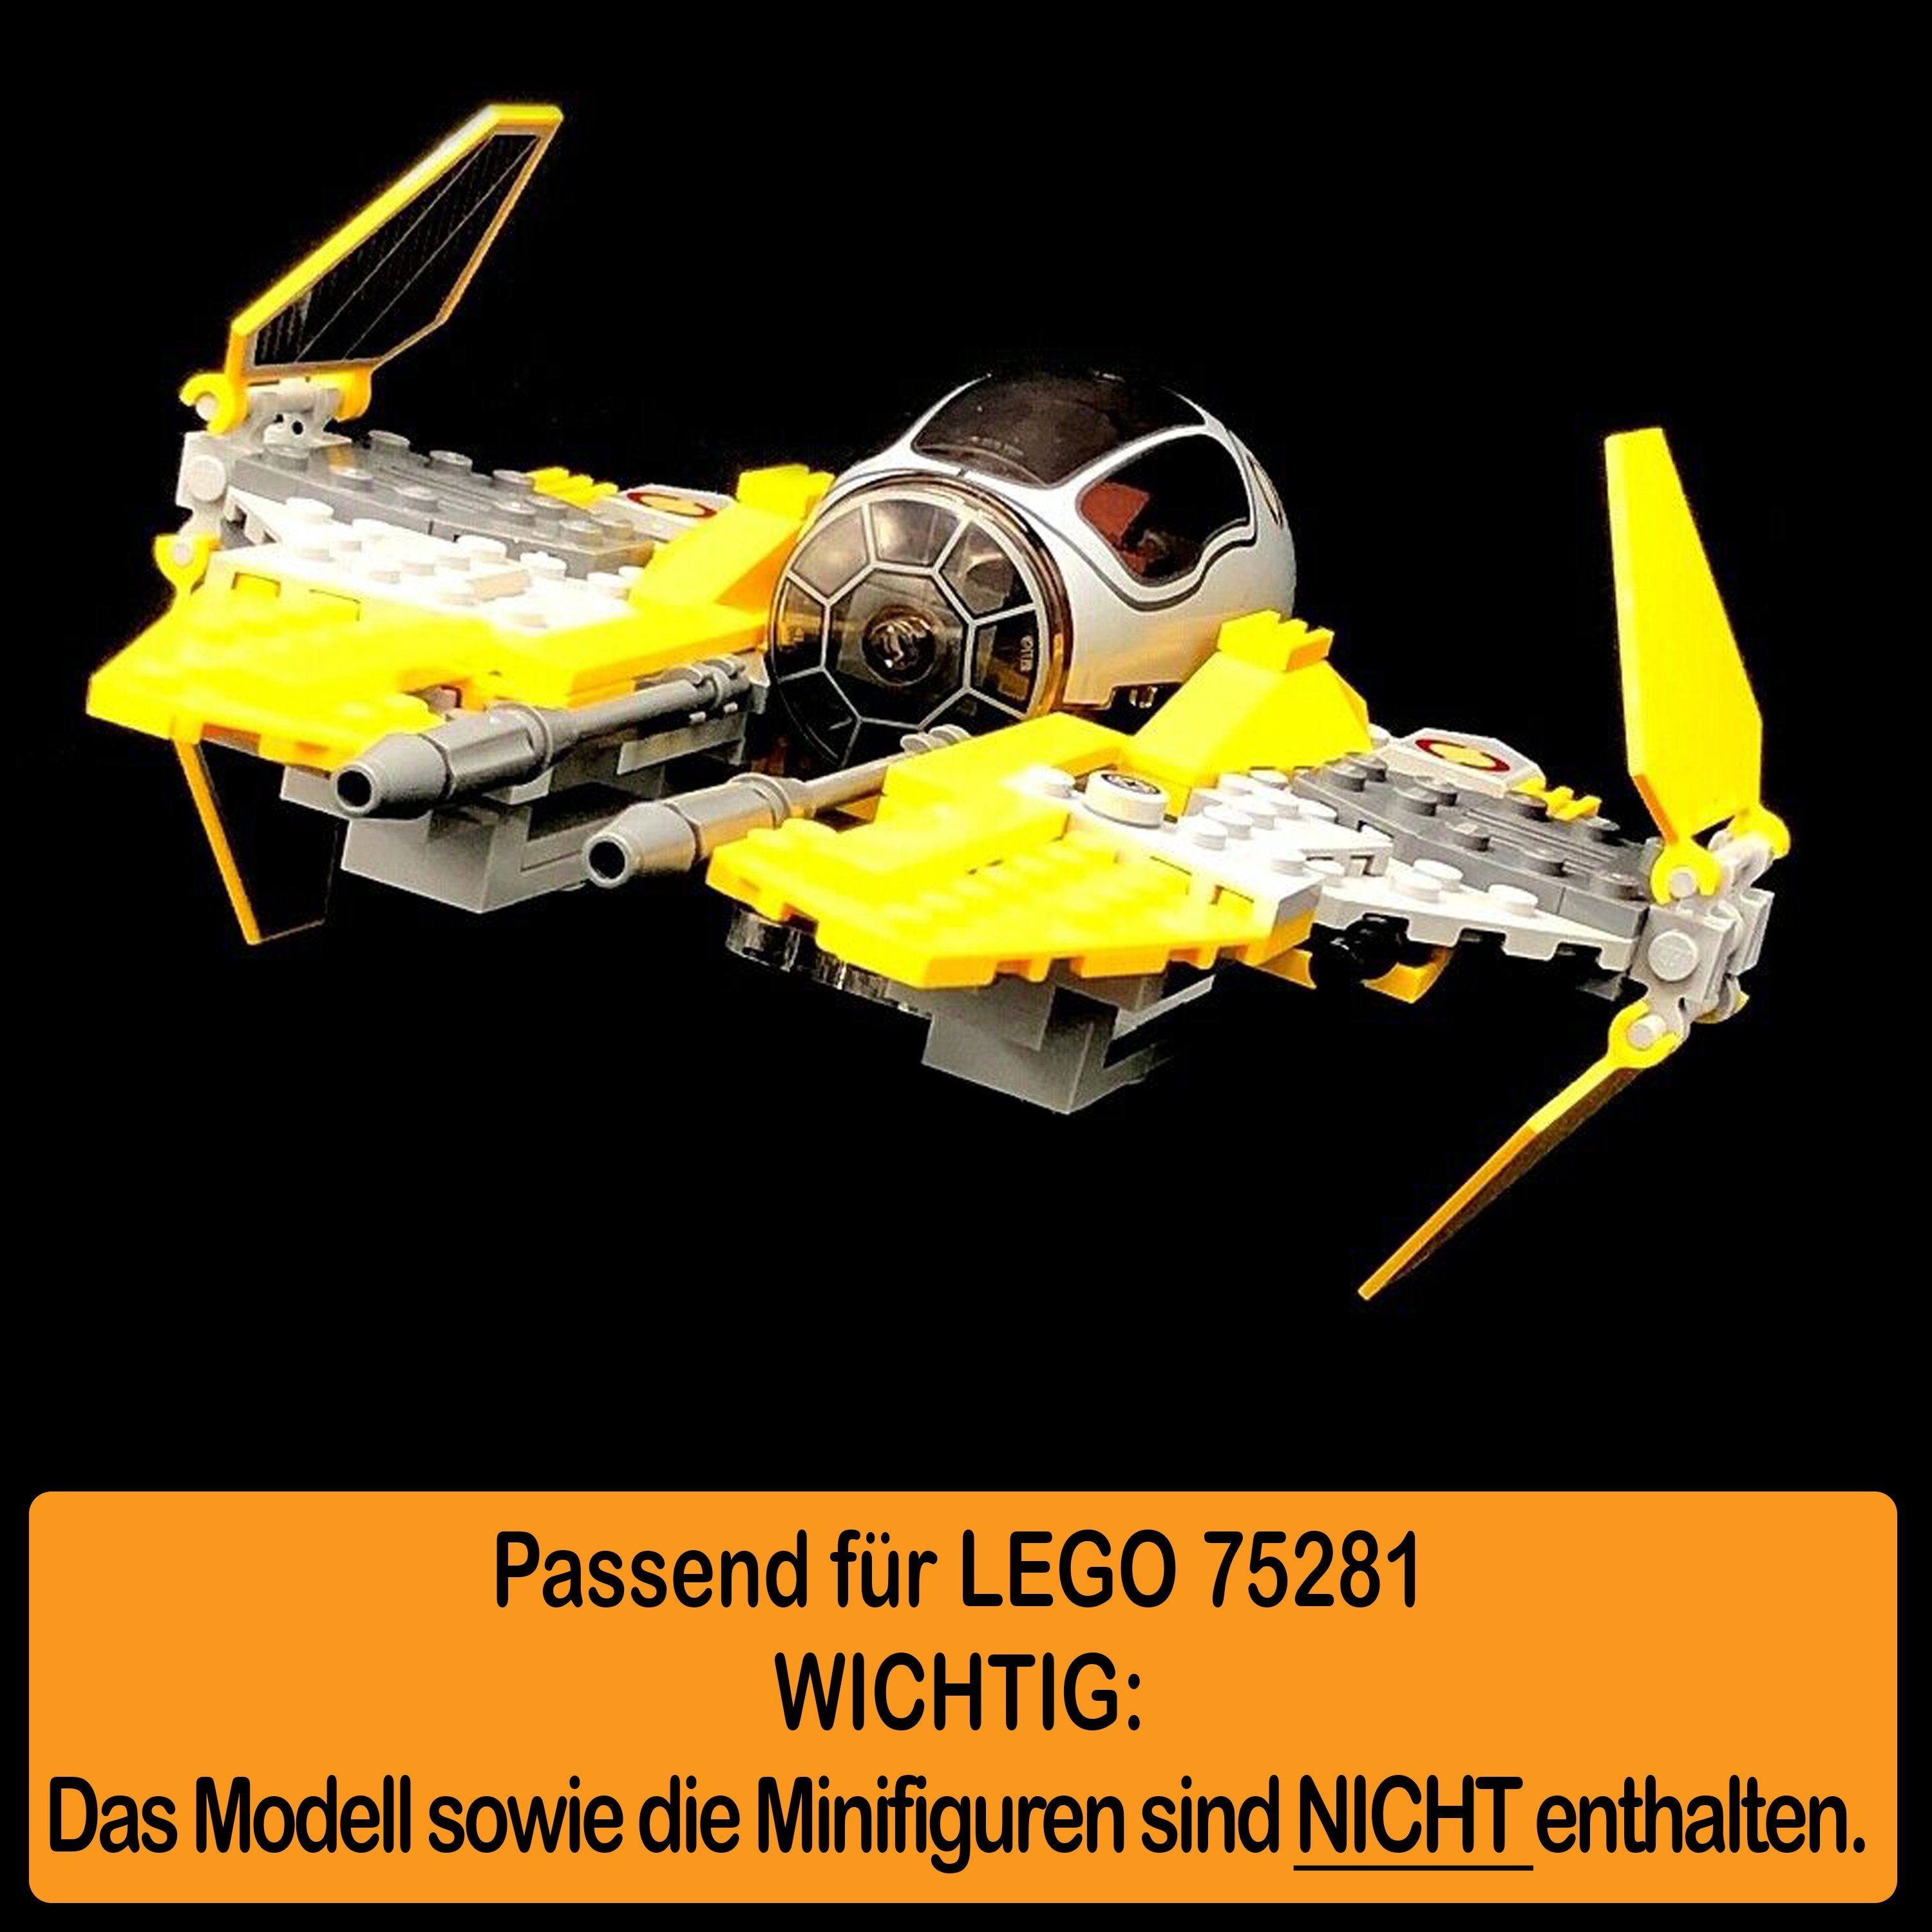 AREA17 Standfuß Interceptor und Winkel selbst Made einstellbar, LEGO Positionen Acryl zusammenbauen), Stand Jedi für 75281 Display (verschiedene 100% Anakin´s Germany in zum